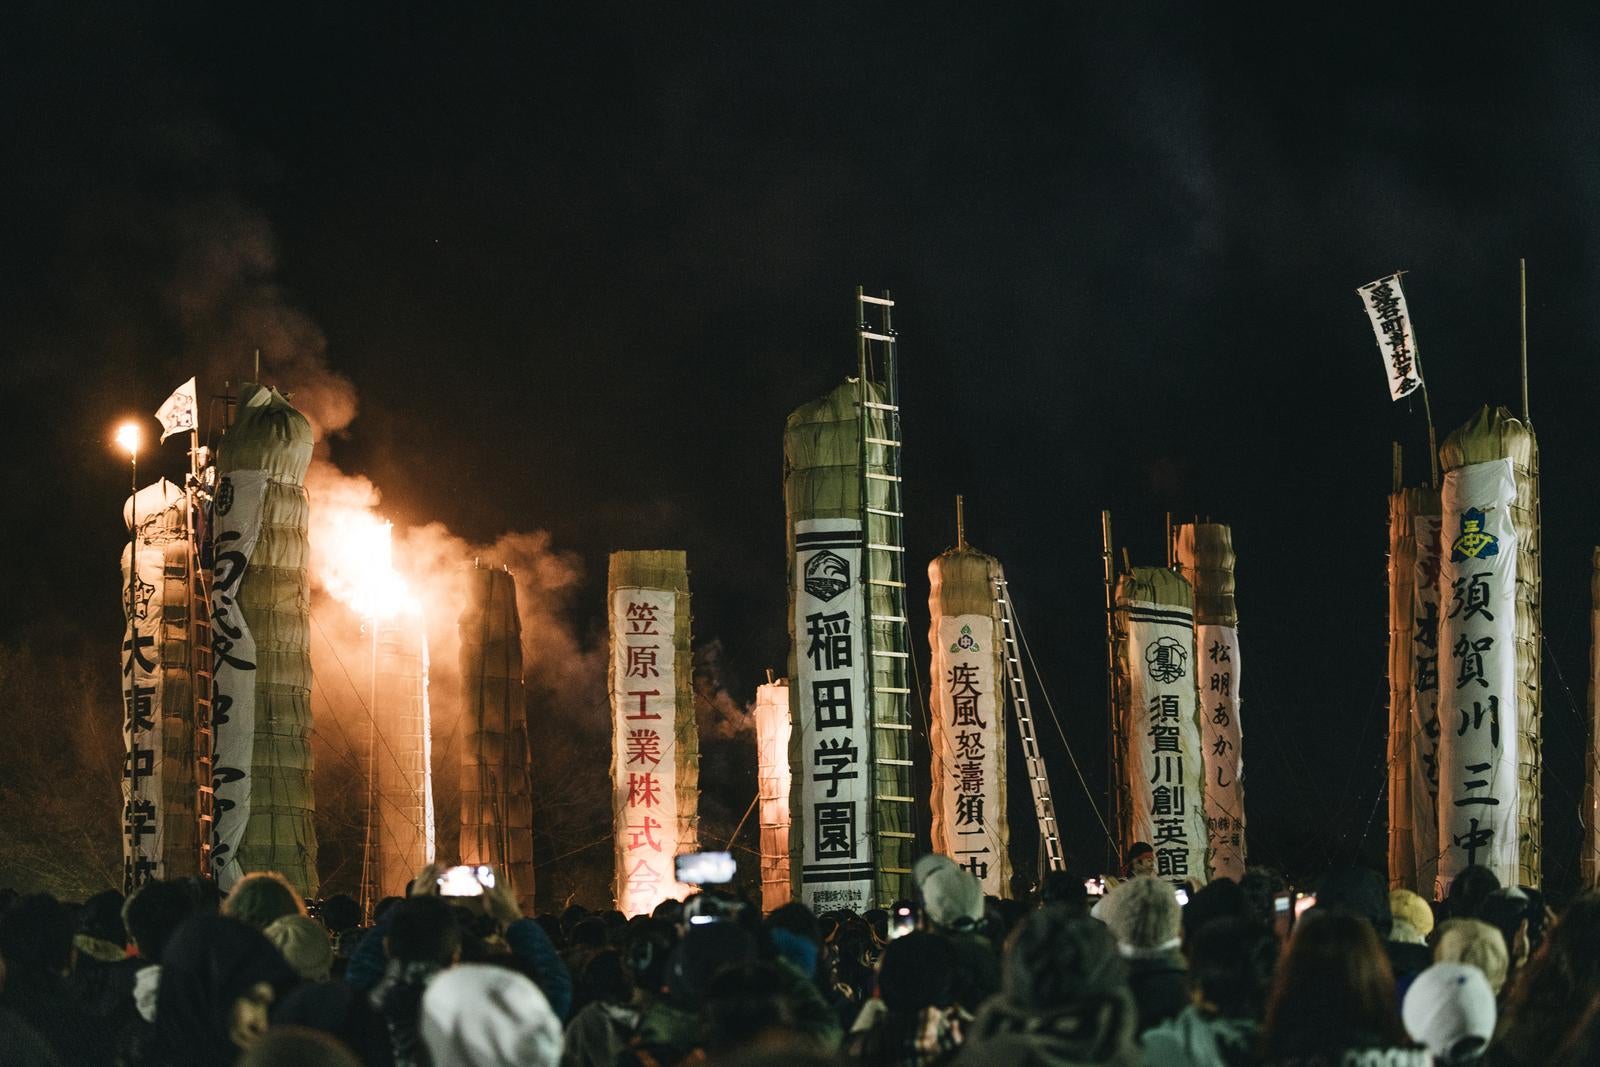 「続々と火が着けられる須賀川市の松明あかし」の写真